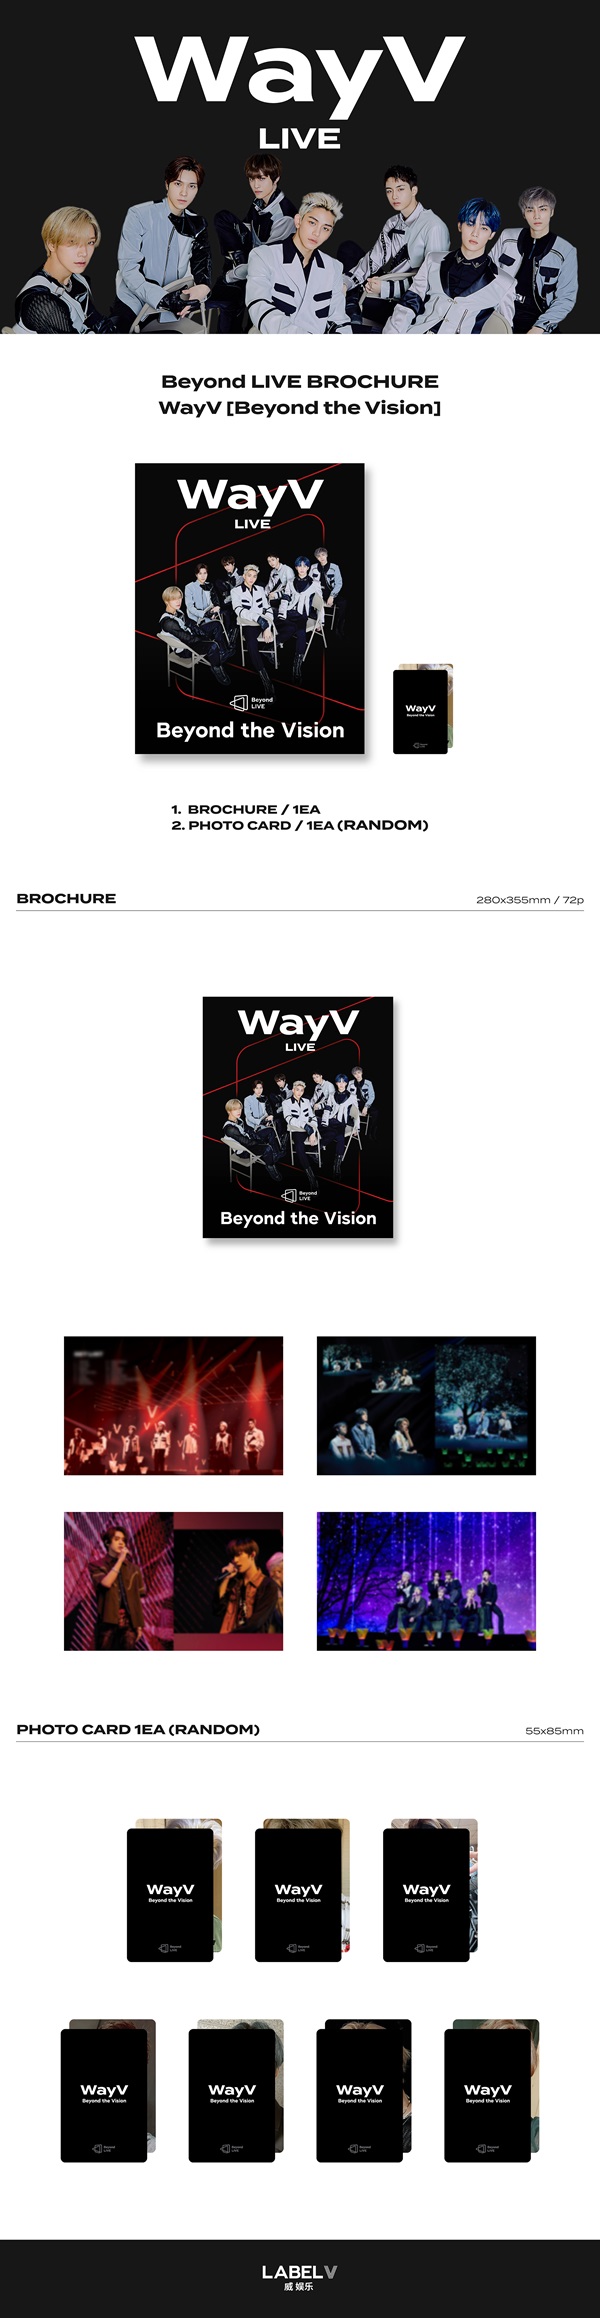 Beyond LIVE BROCHURE WayV [Beyond the Vision]_4